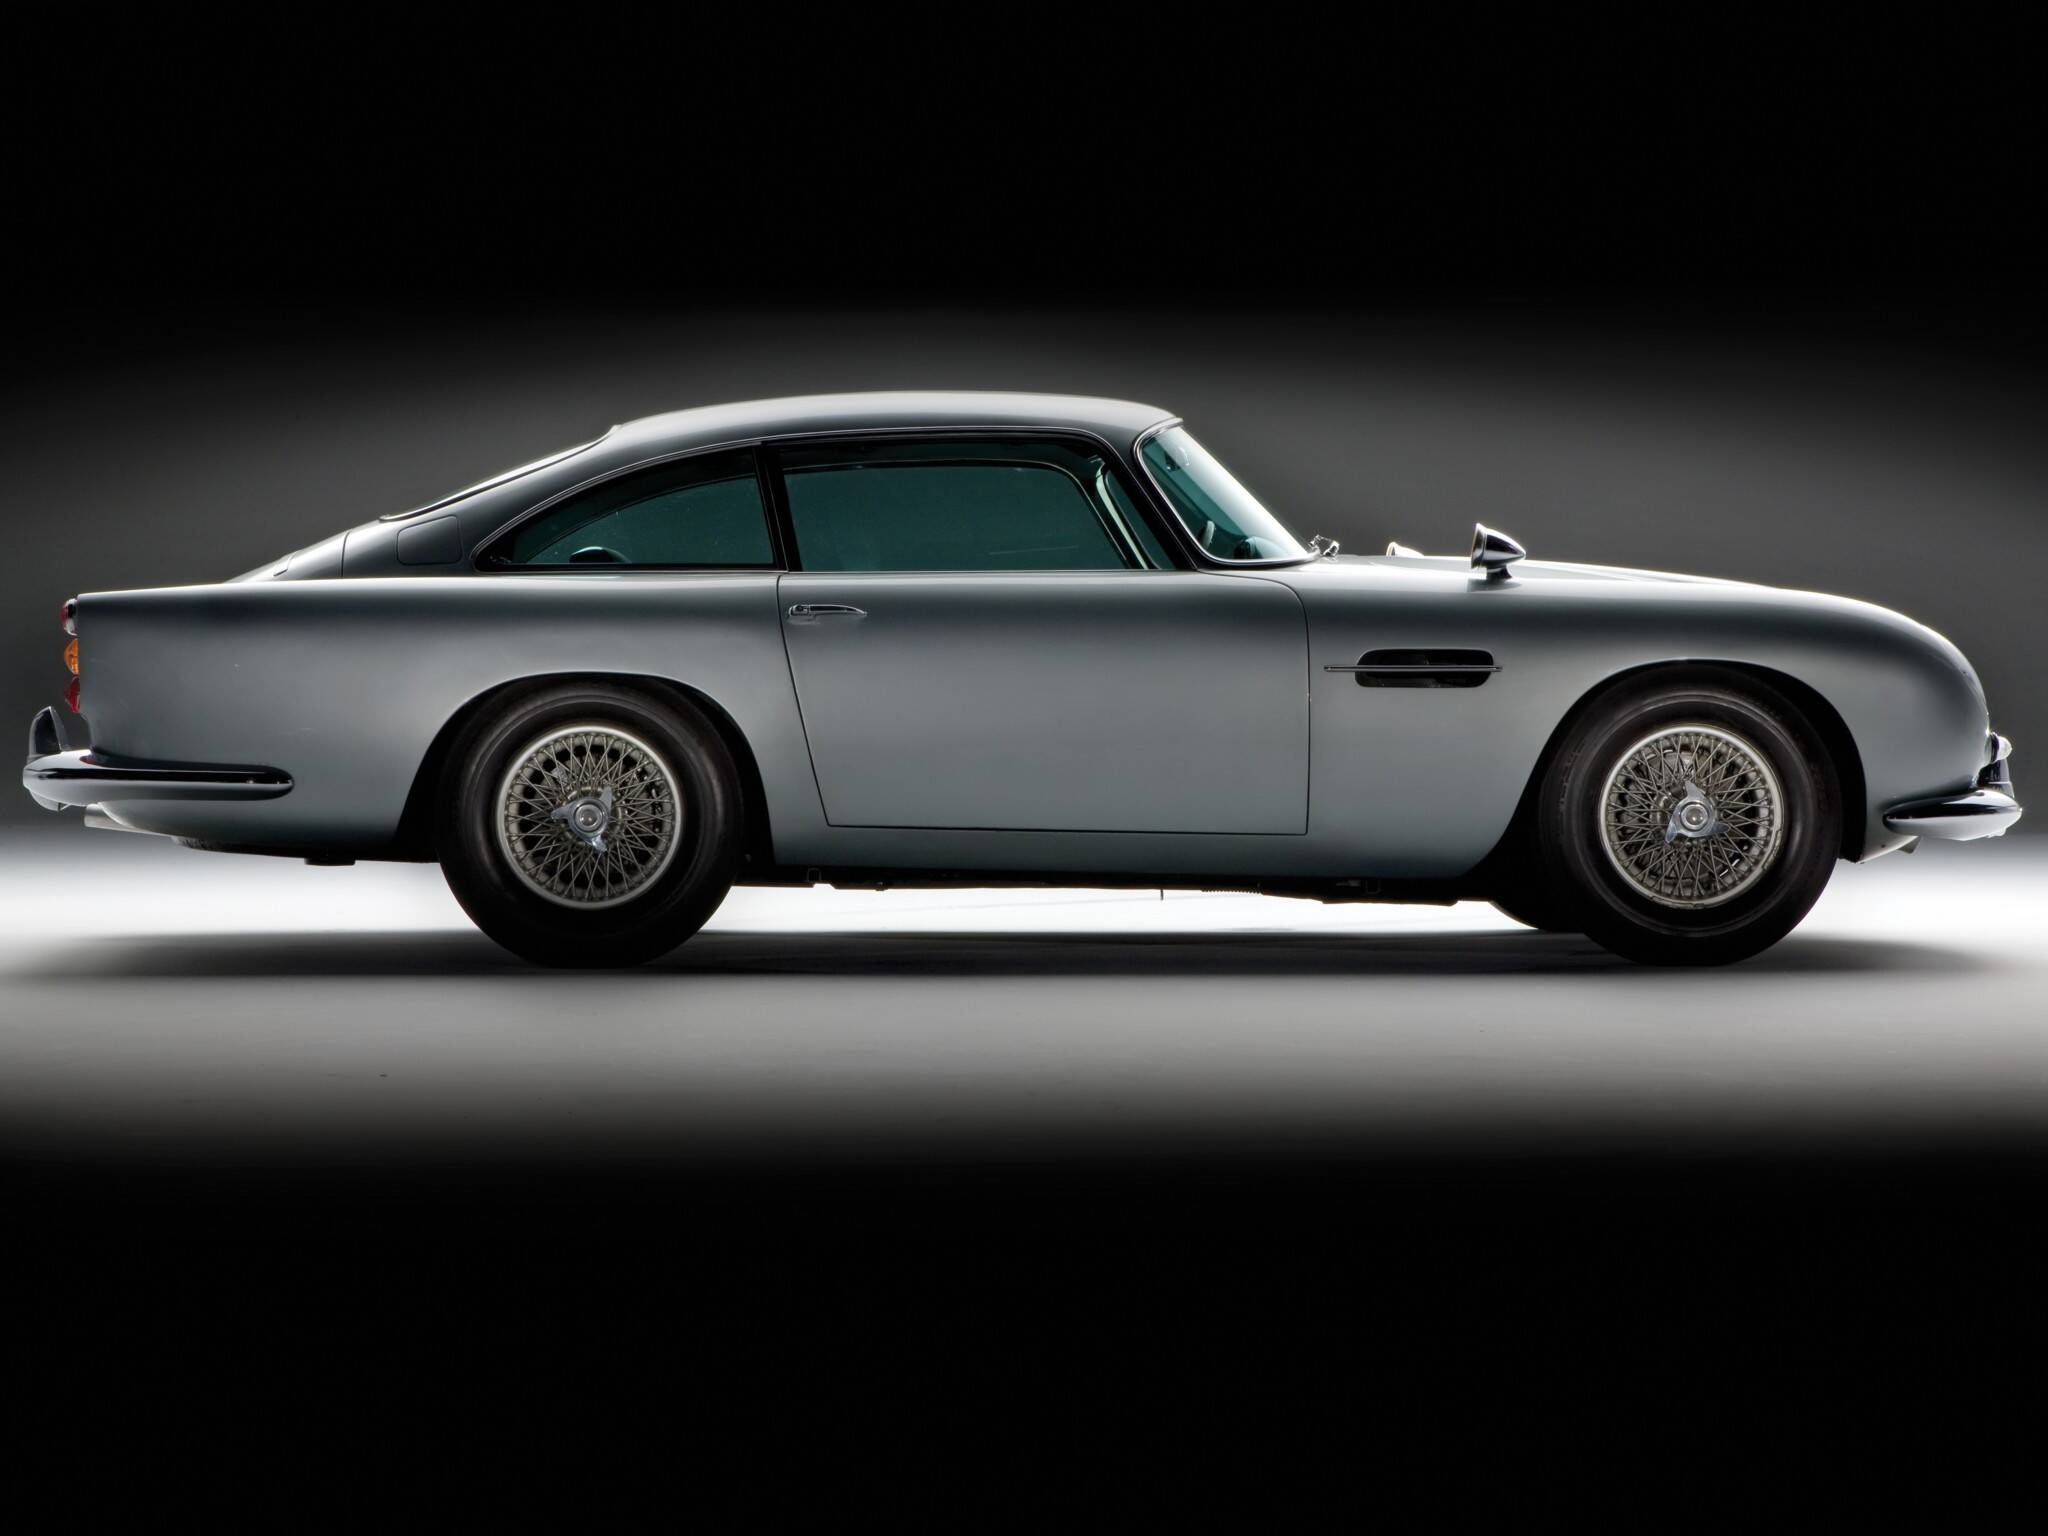 Aston Martin DB5 do filme "Goldfinger", do agente secreto James Bond. Foto: Divulgação